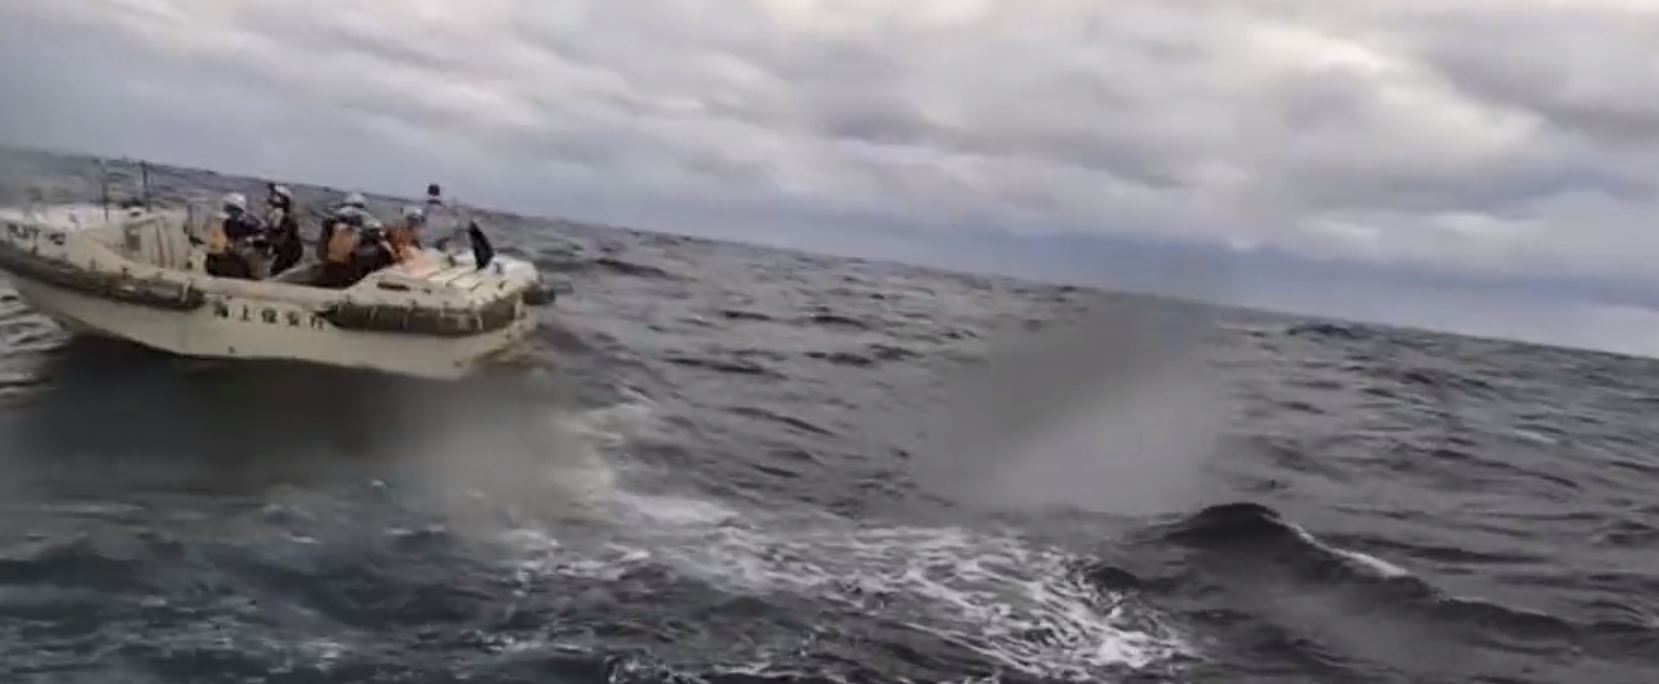 Ιαπωνία: Επιχείρηση διάσωσης για 22 μέλη πληρώματος φορτηγού πλοίου που αναποδογύρισε